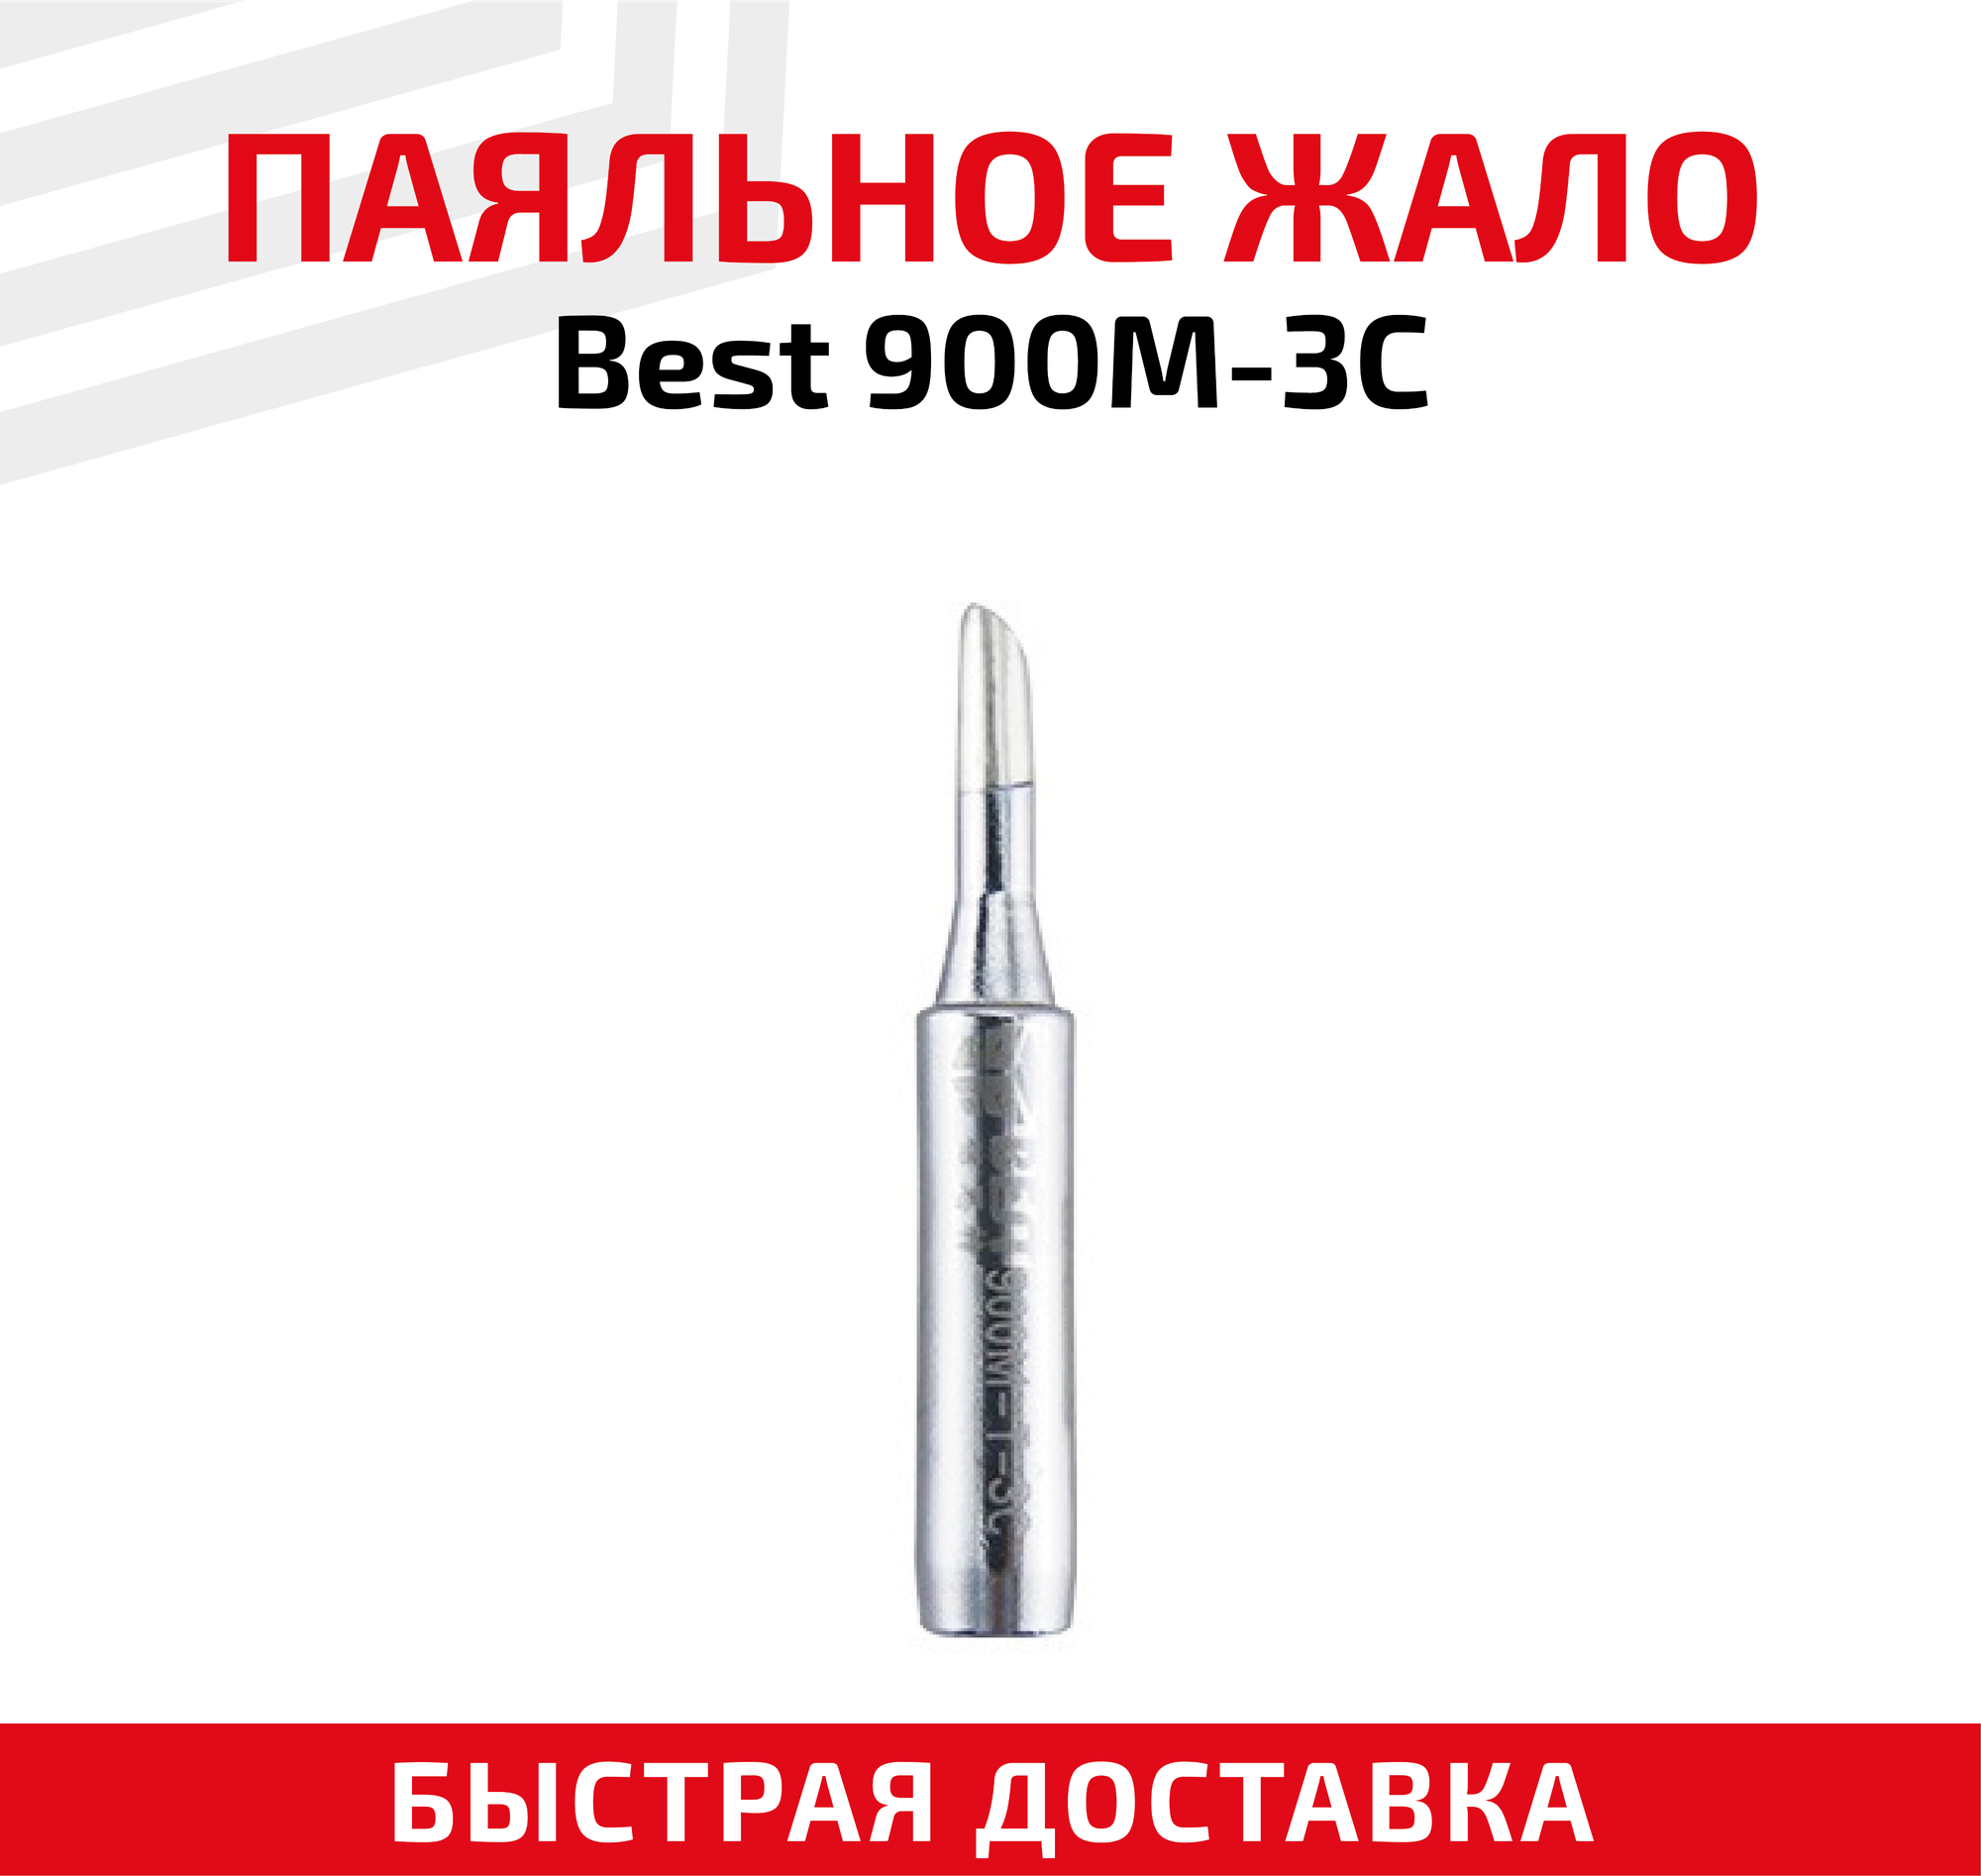 Жало (насадка наконечник) для паяльника (паяльной станции) Best 900M-3C со скосом 3 мм